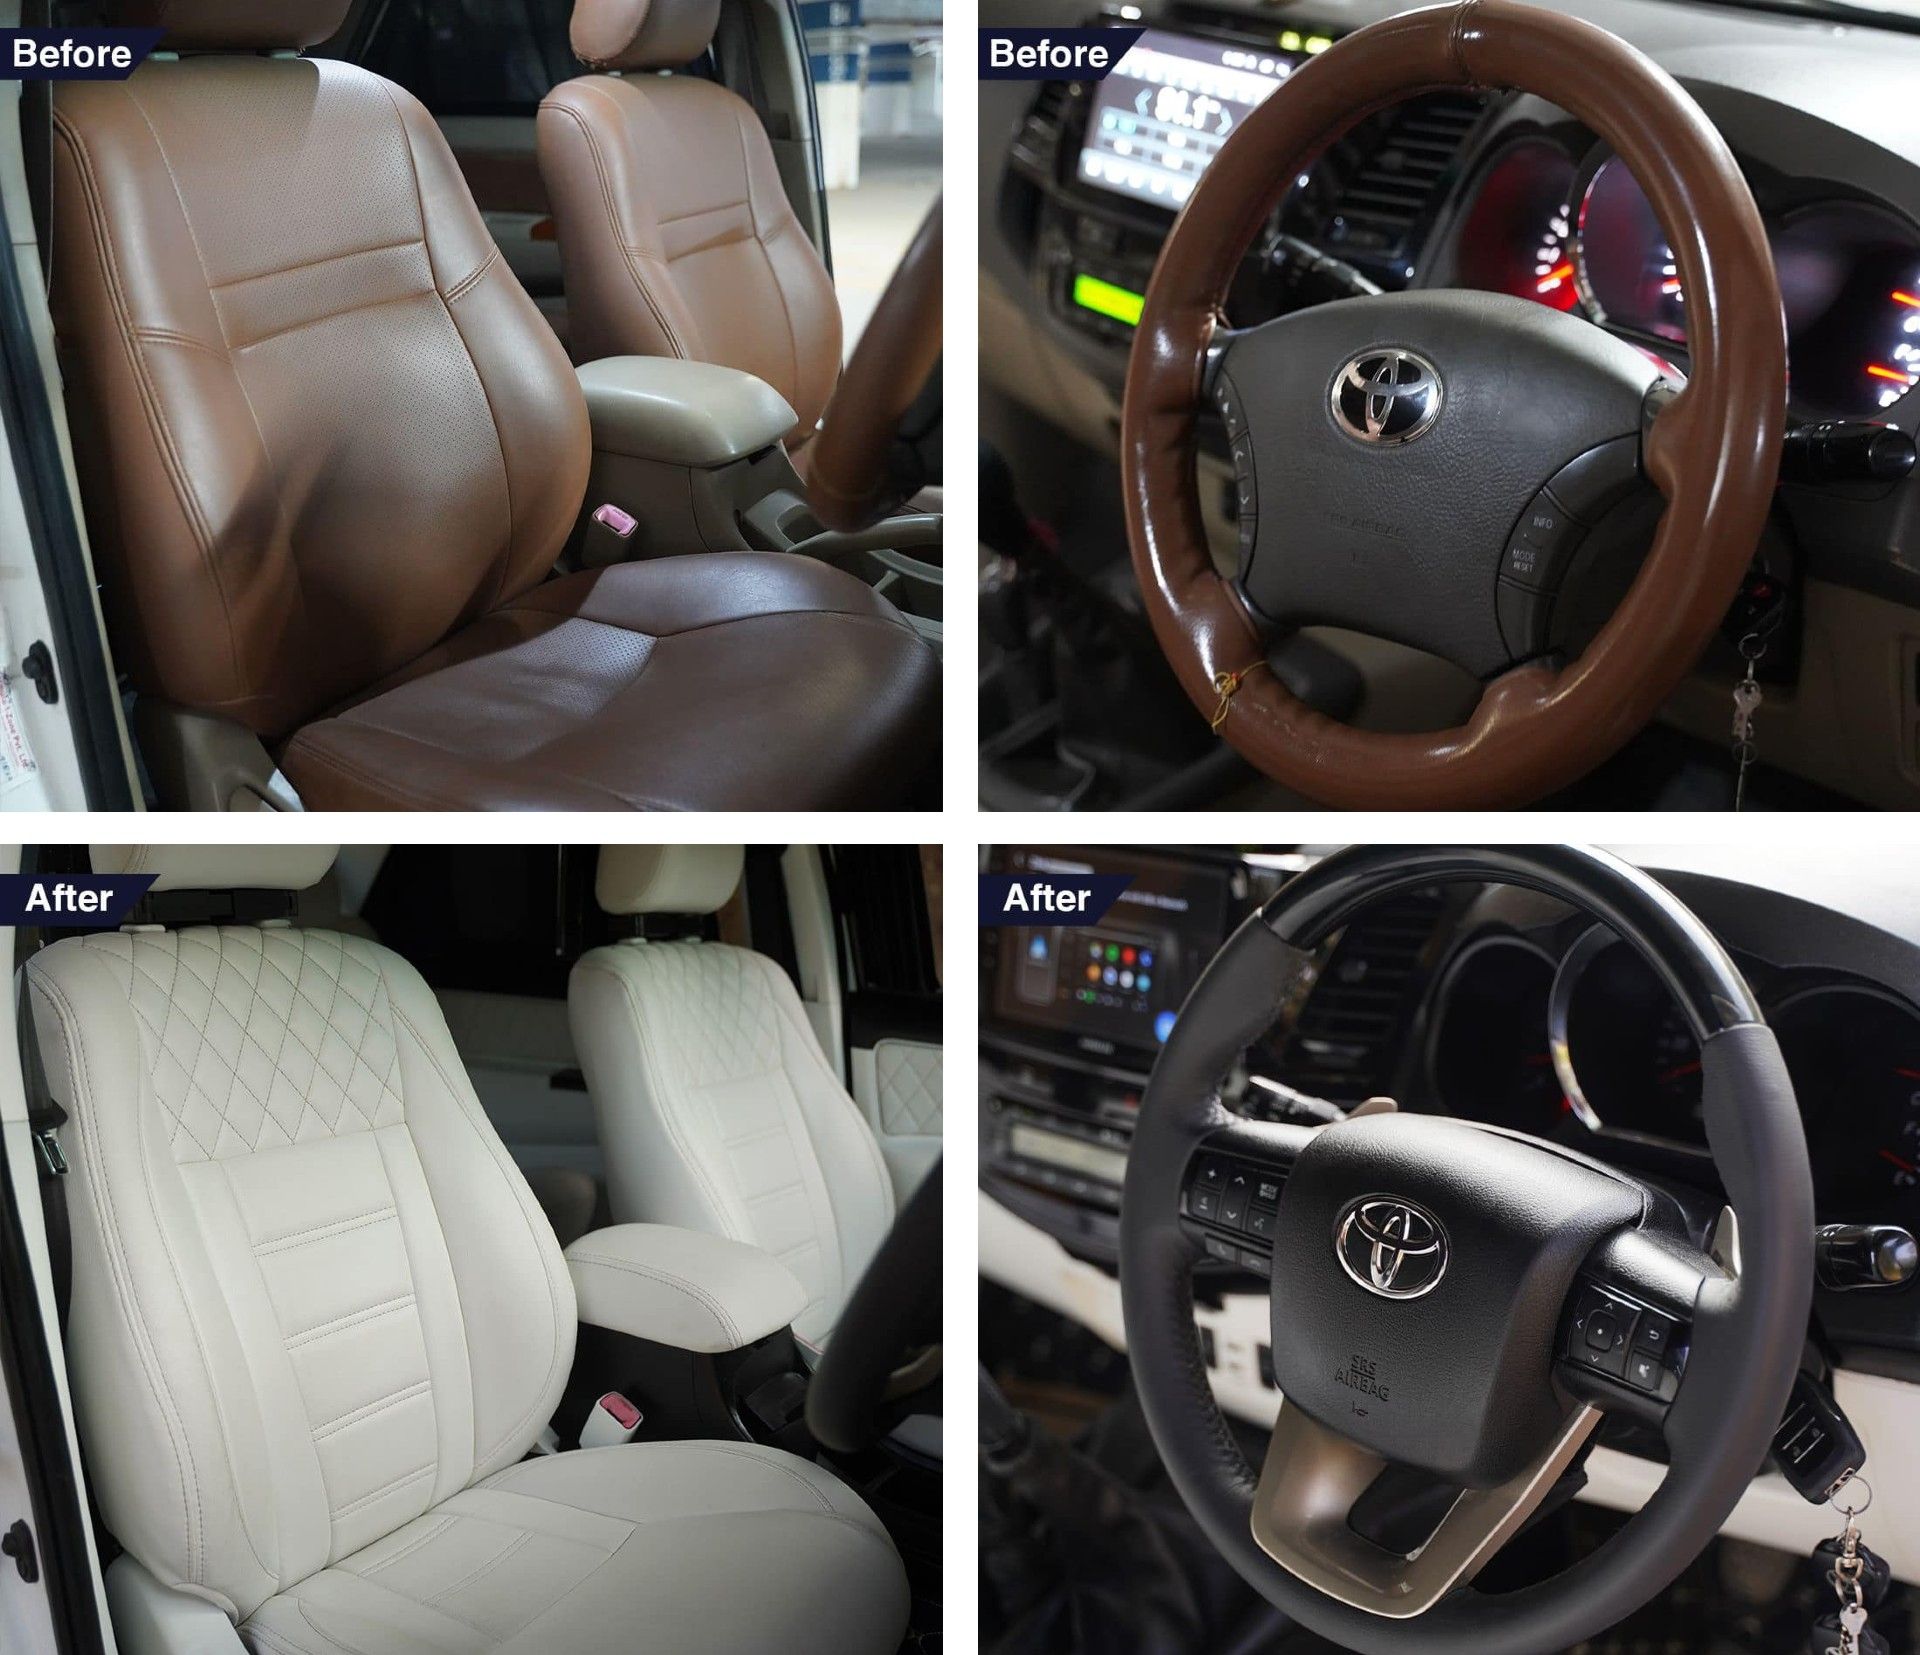 Toyota Fortuner đời đầu được hô biến thành một chiếc Lexus hiện đại toyota-fortuner-lexus-transformation-interior-1.jpg